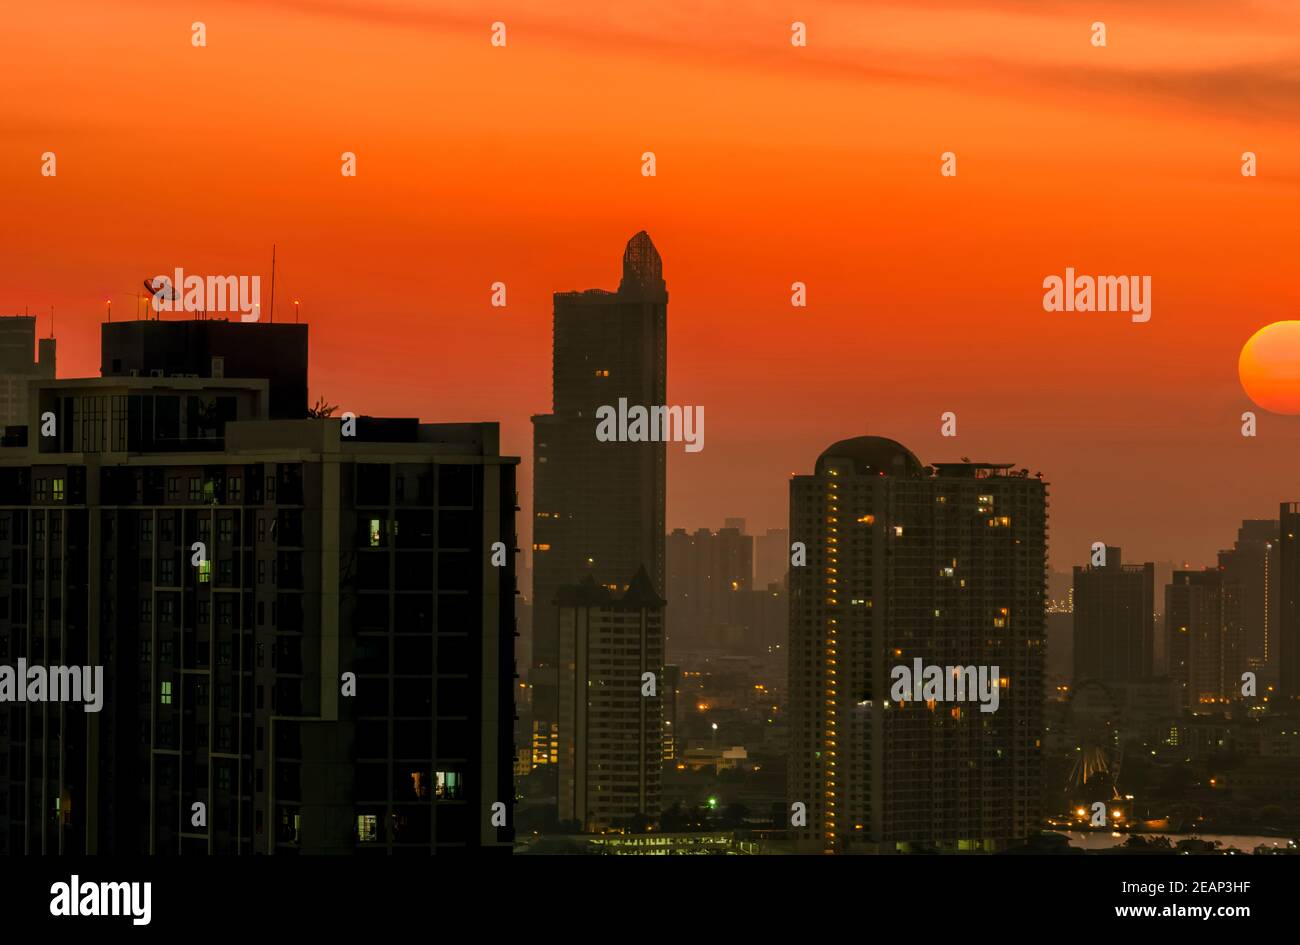 Stadtbild mit herrlichem Morgensonnenaufgangshimmel. Luftverschmutzung in Bangkok, Thailand. Smog und Feinstaub von PM2,5 bedeckten die Stadt. Stadtbild mit verschmutzter Luft. Schmutzige Umgebung. Giftiger Staub in der Stadt. Stockfoto